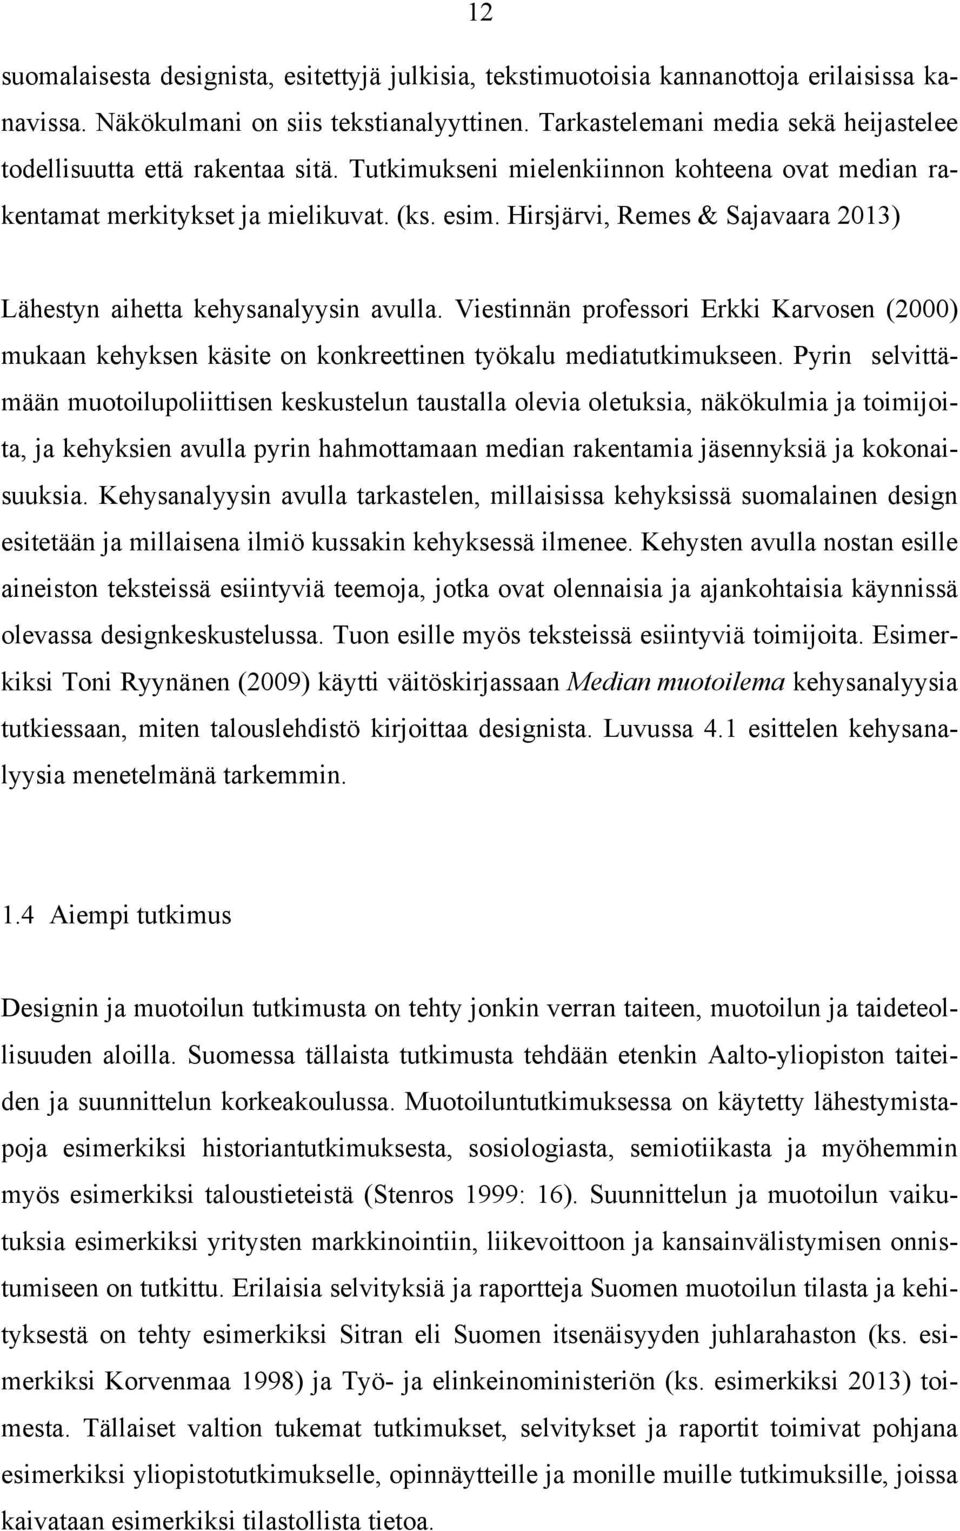 Hirsjärvi, Remes & Sajavaara 2013) Lähestyn aihetta kehysanalyysin avulla. Viestinnän professori Erkki Karvosen (2000) mukaan kehyksen käsite on konkreettinen työkalu mediatutkimukseen.